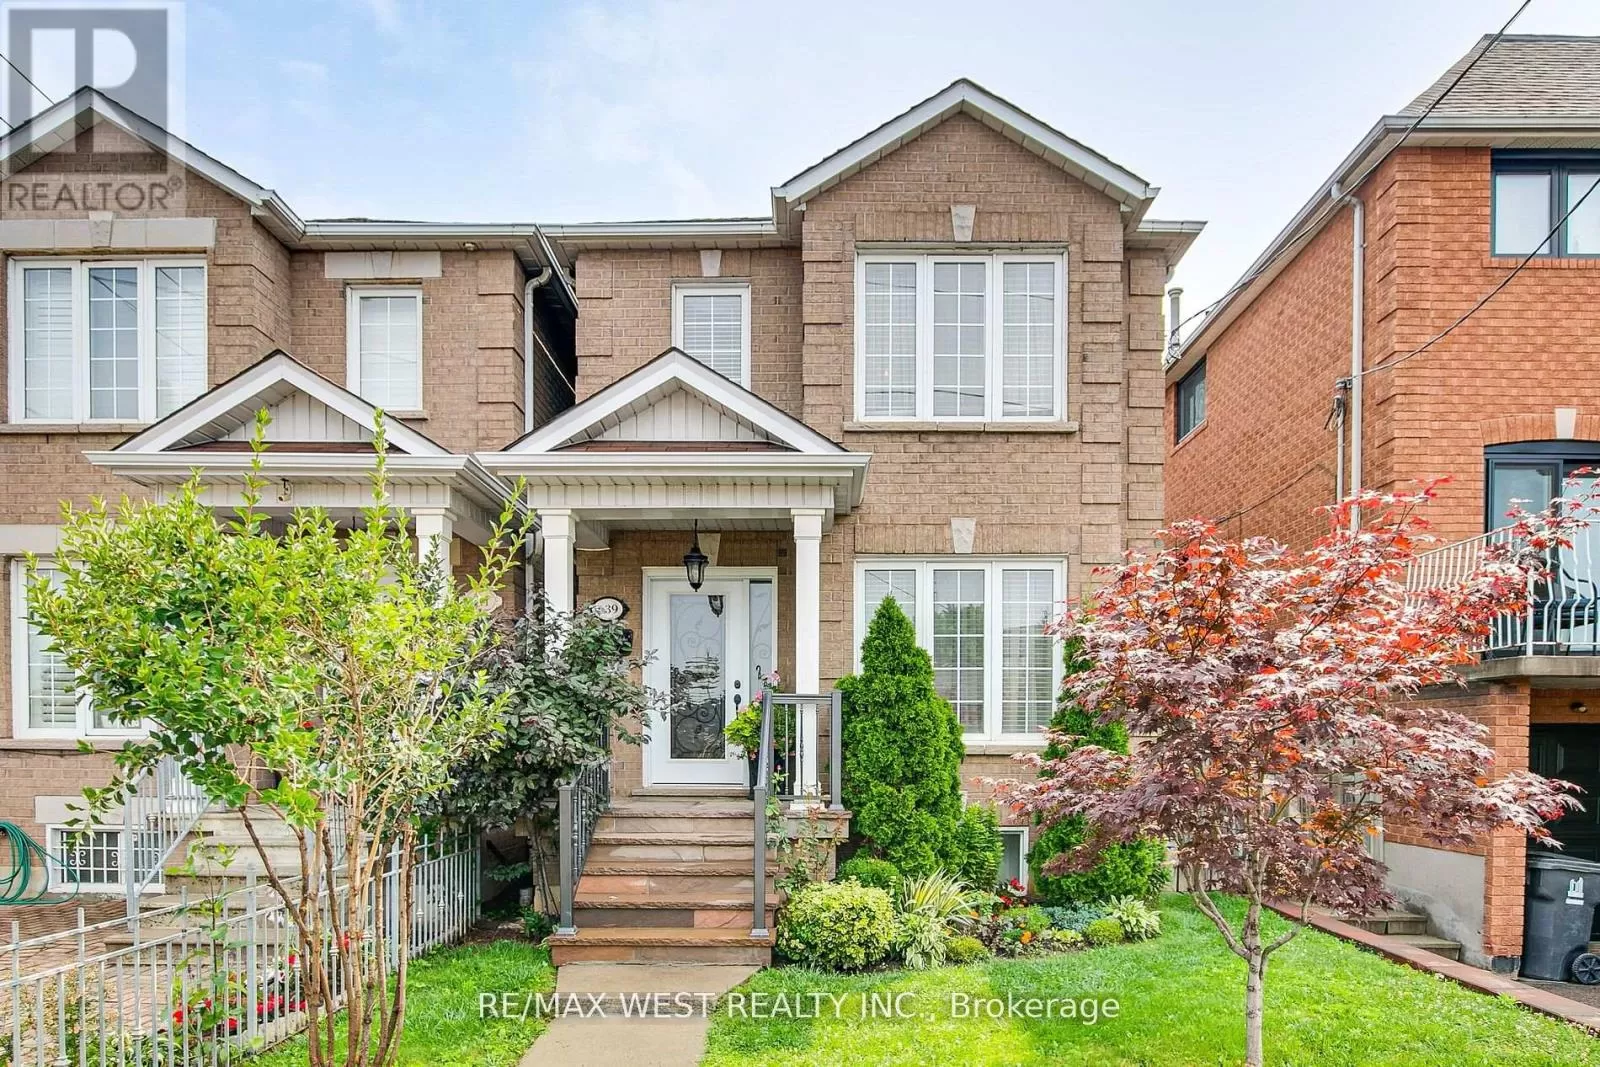 House for rent: 639 Caledonia Road, Toronto, Ontario M6E 4V7